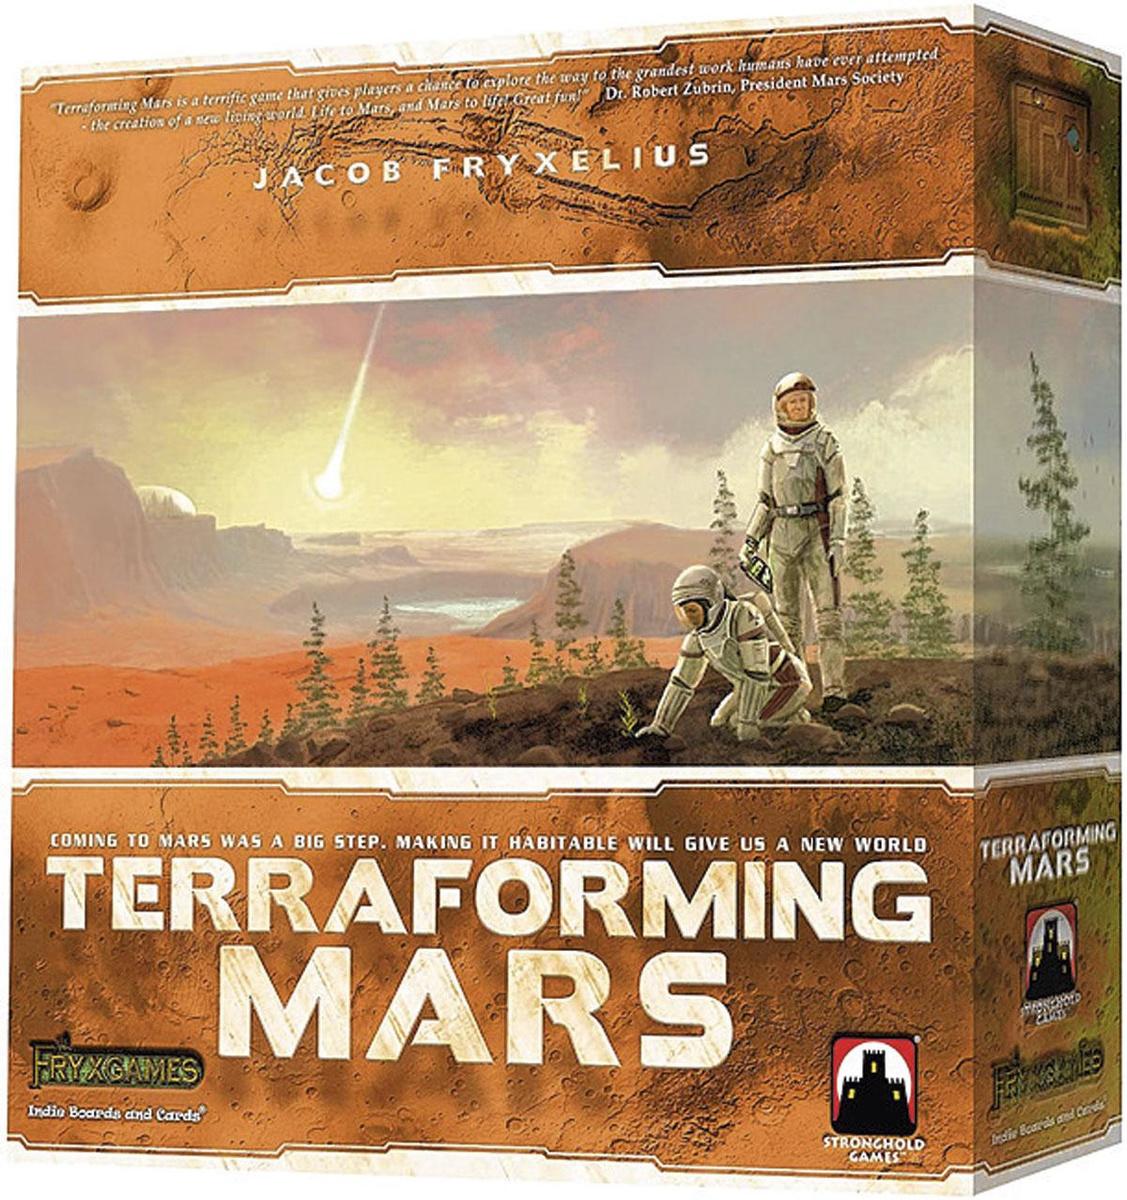 Terraforming Mars, pour tenter de rendre la planète rouge habitable, 54,99 euros, bol.com